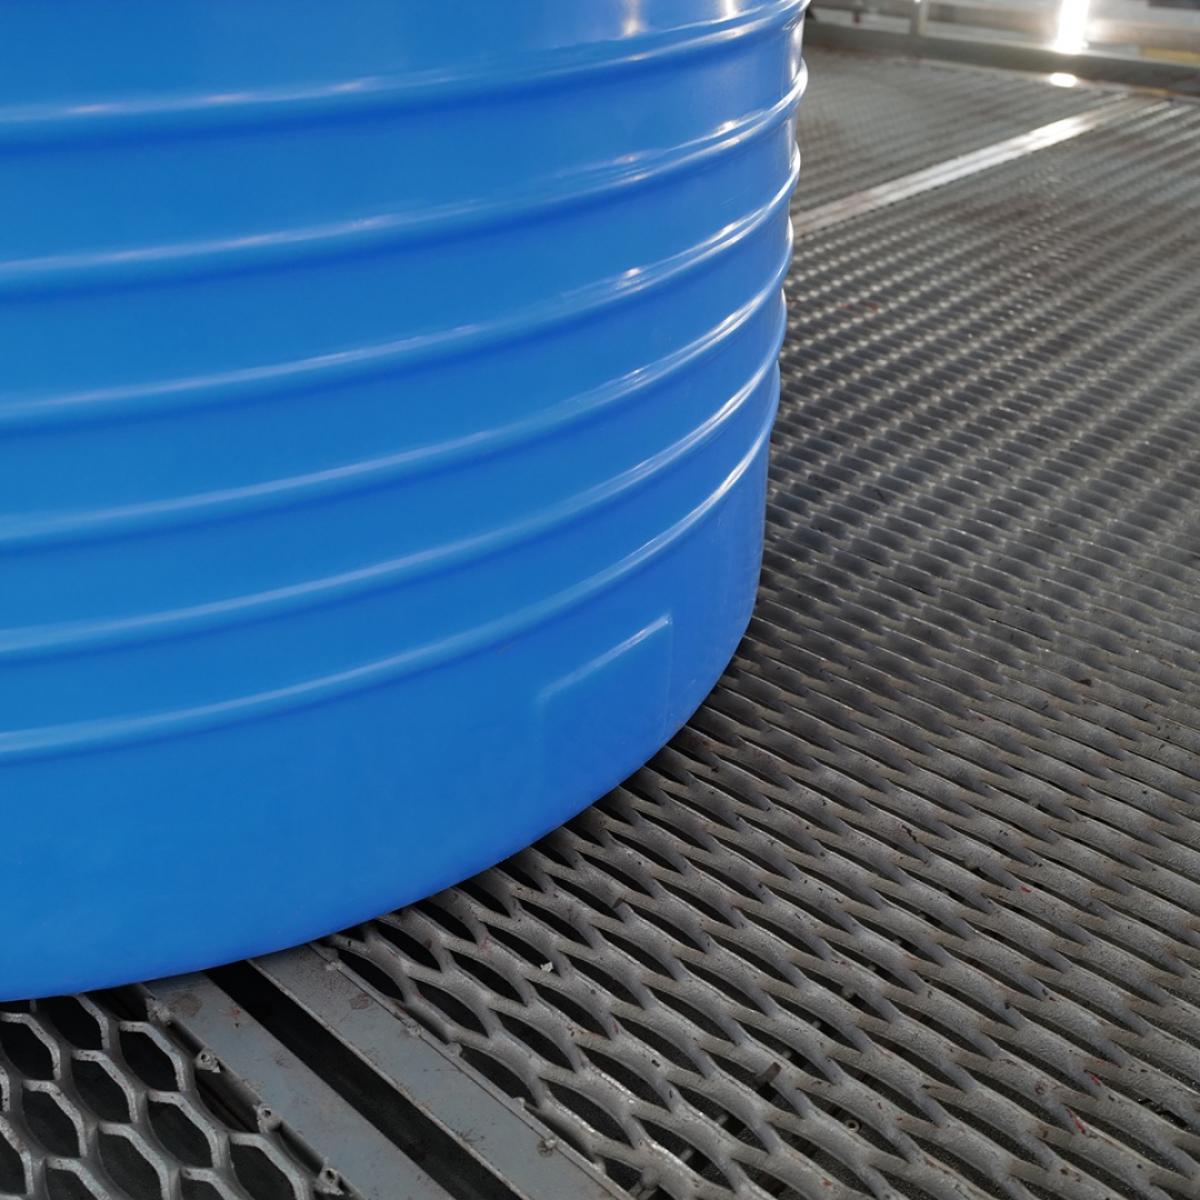 Емкость ЭВЛ 500л (синий) для хранения питьевой воды 